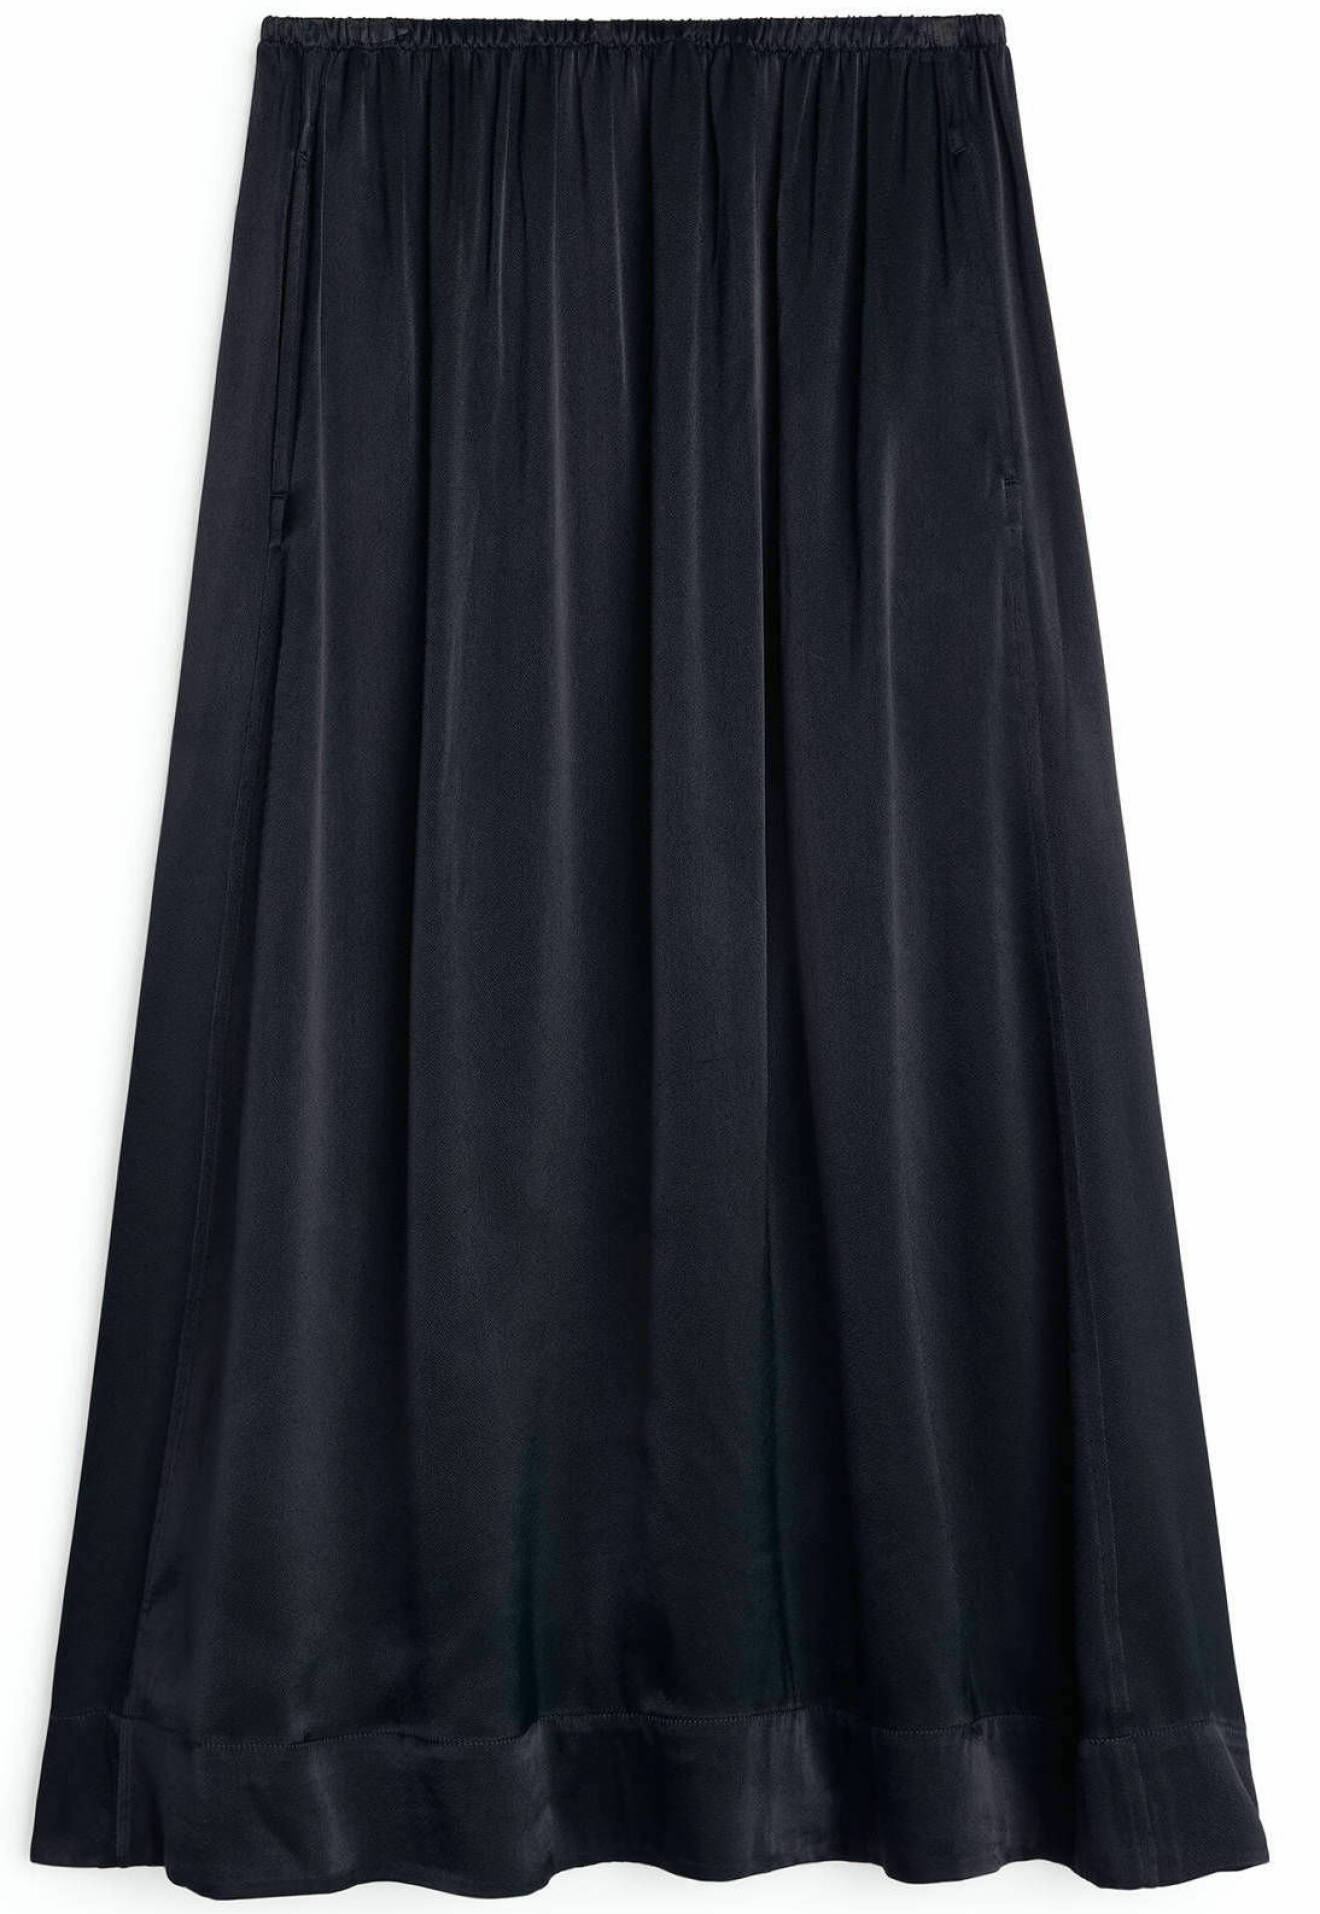 svart svepande kjol från arket.